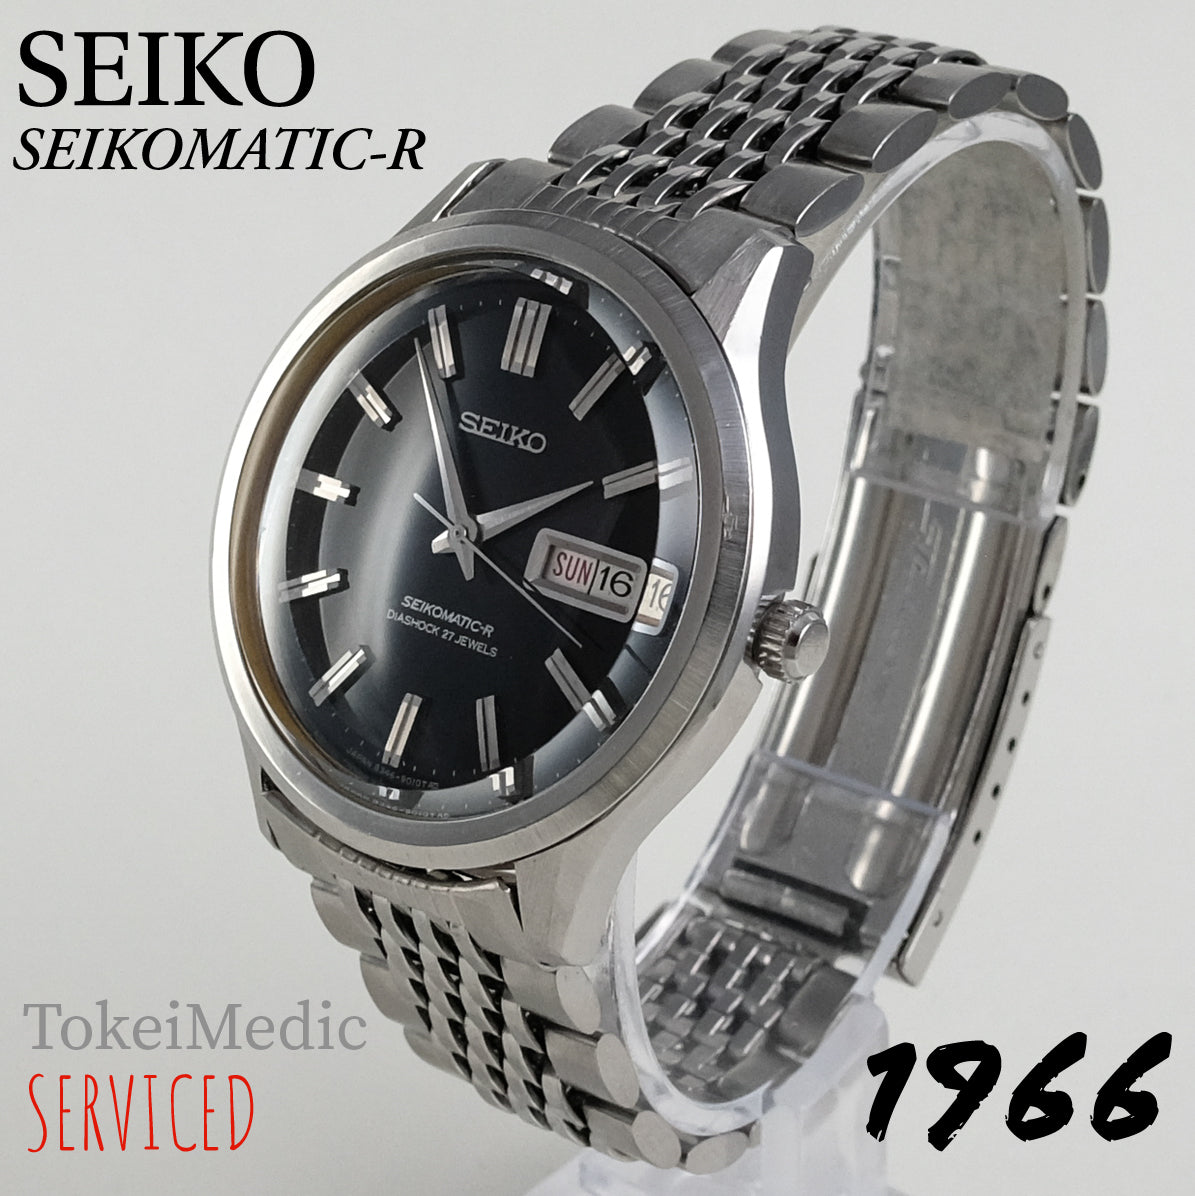 1966 Seiko Seikomatic-R 8346-9010